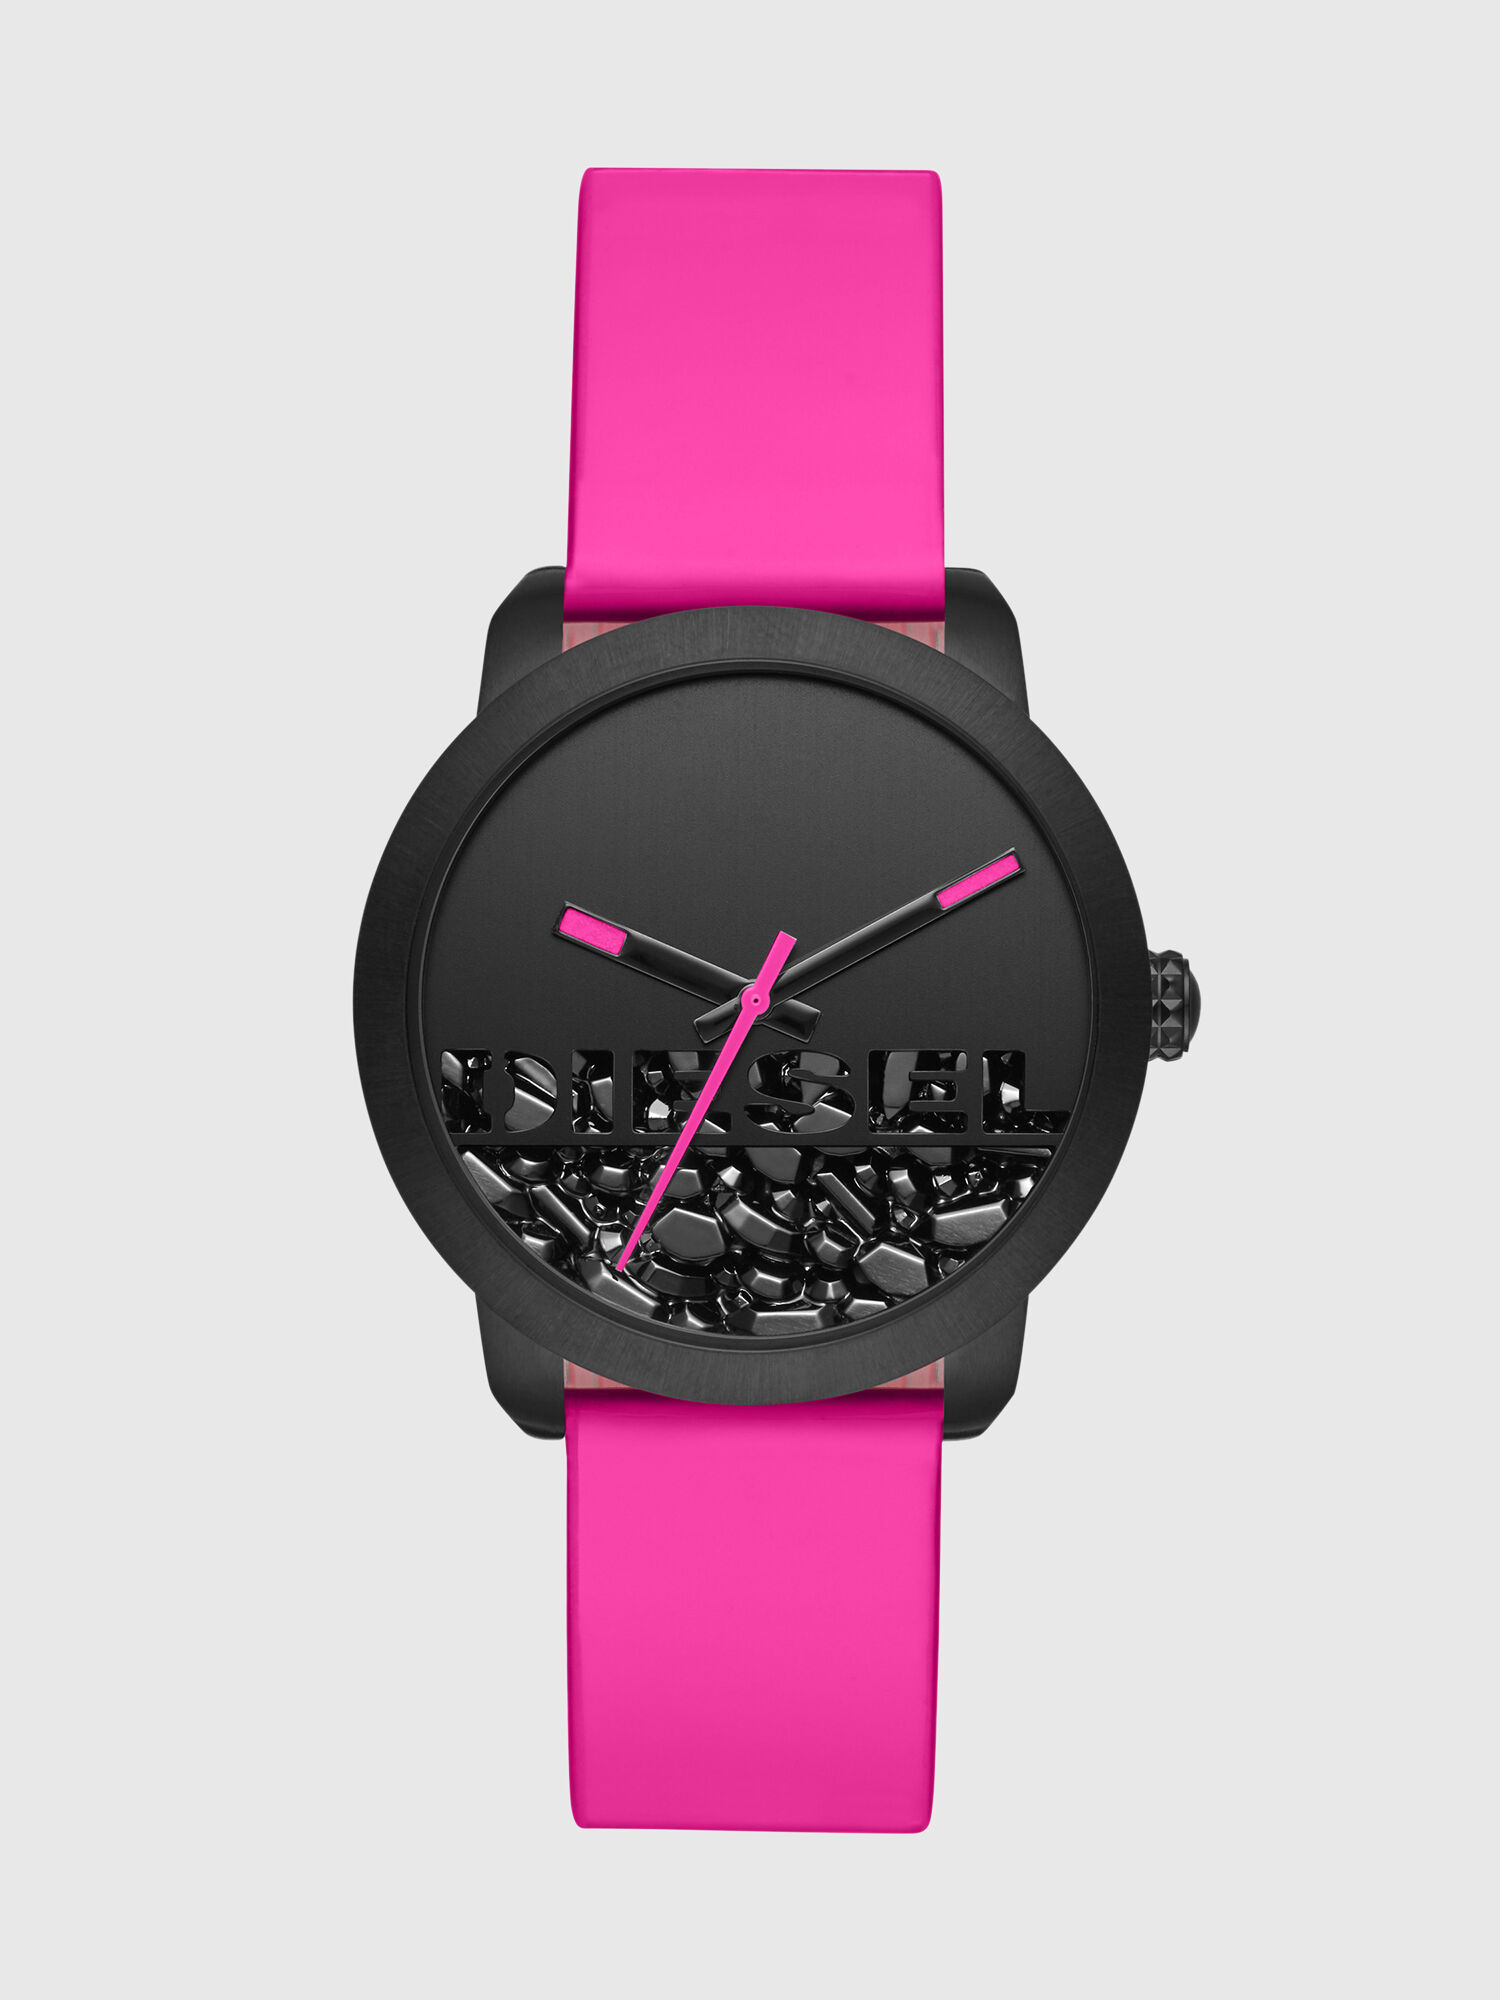 pink watch